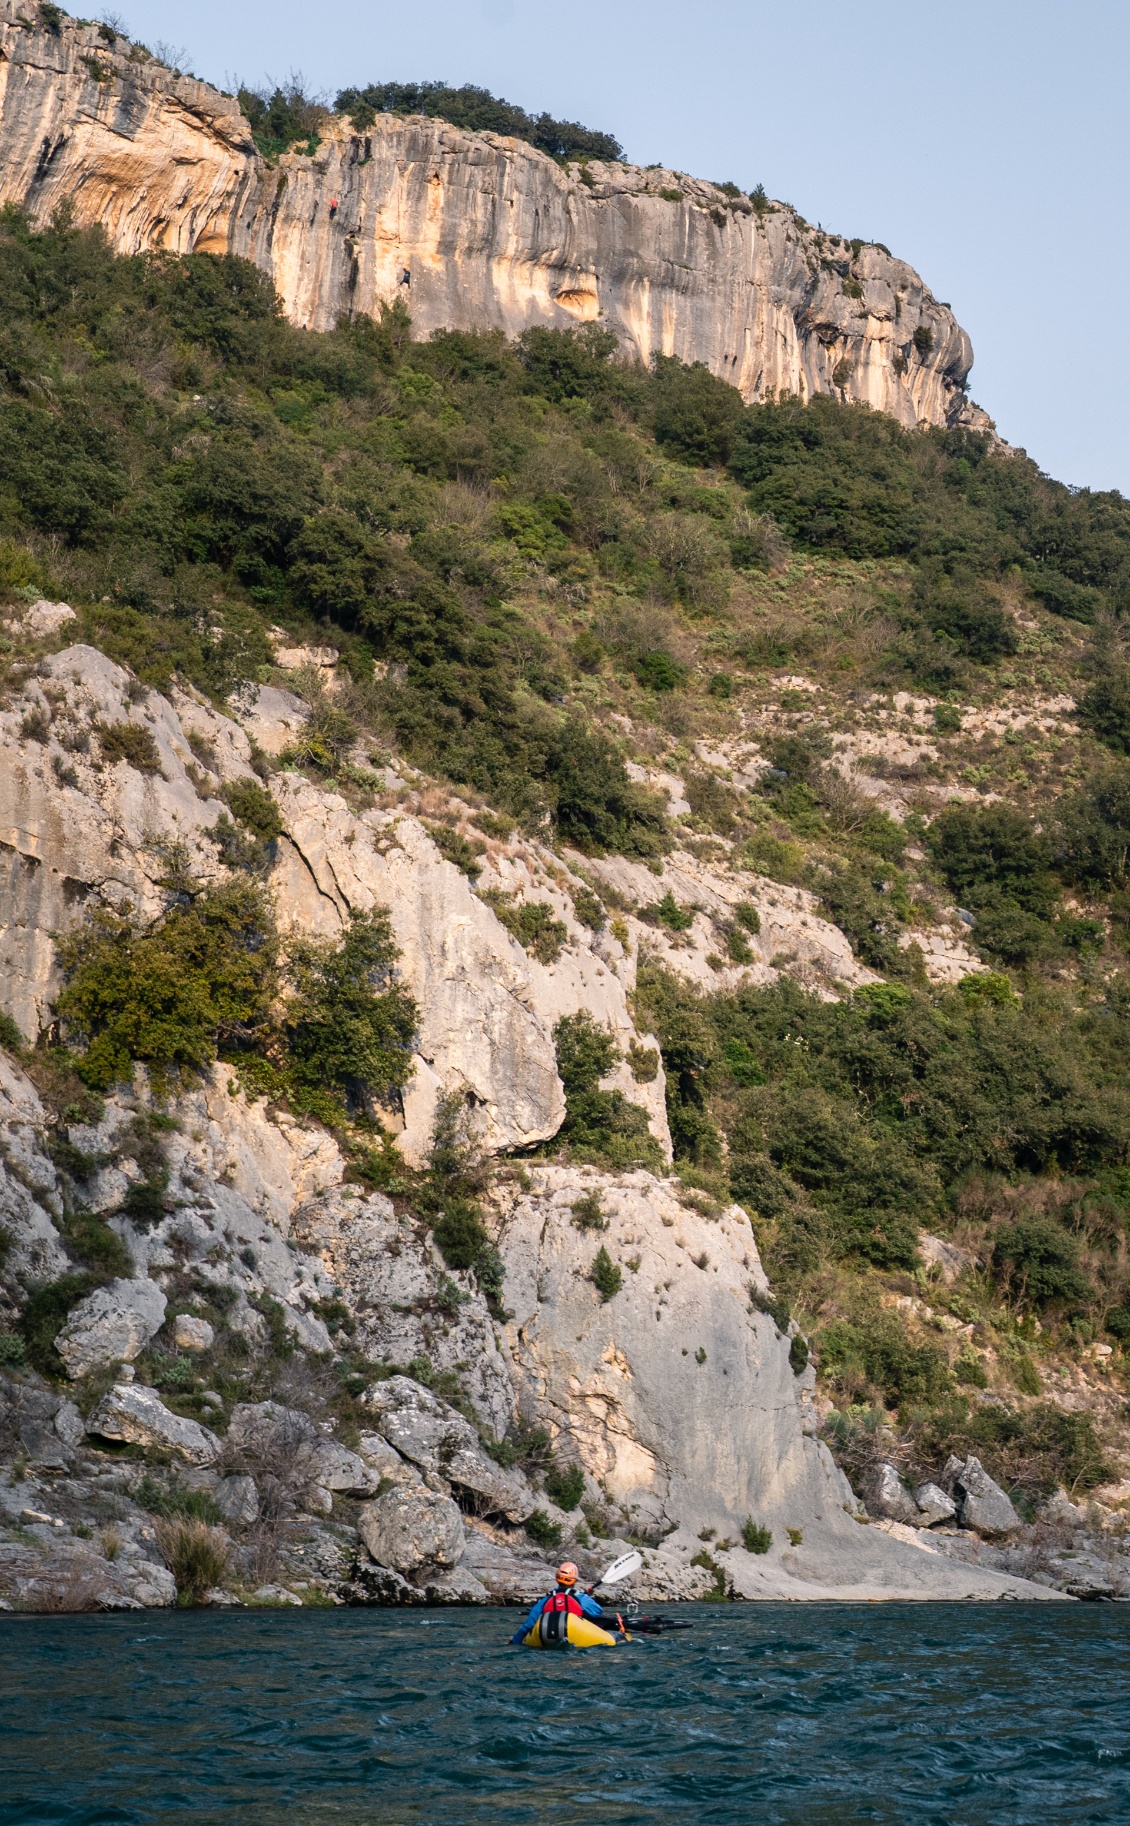 Nous voilà sur le méandre que l'on dominait depuis le point de vue. En scrutant bien, on aperçoit des grimpeurs sur la falaise supérieure (site du Moulinas).